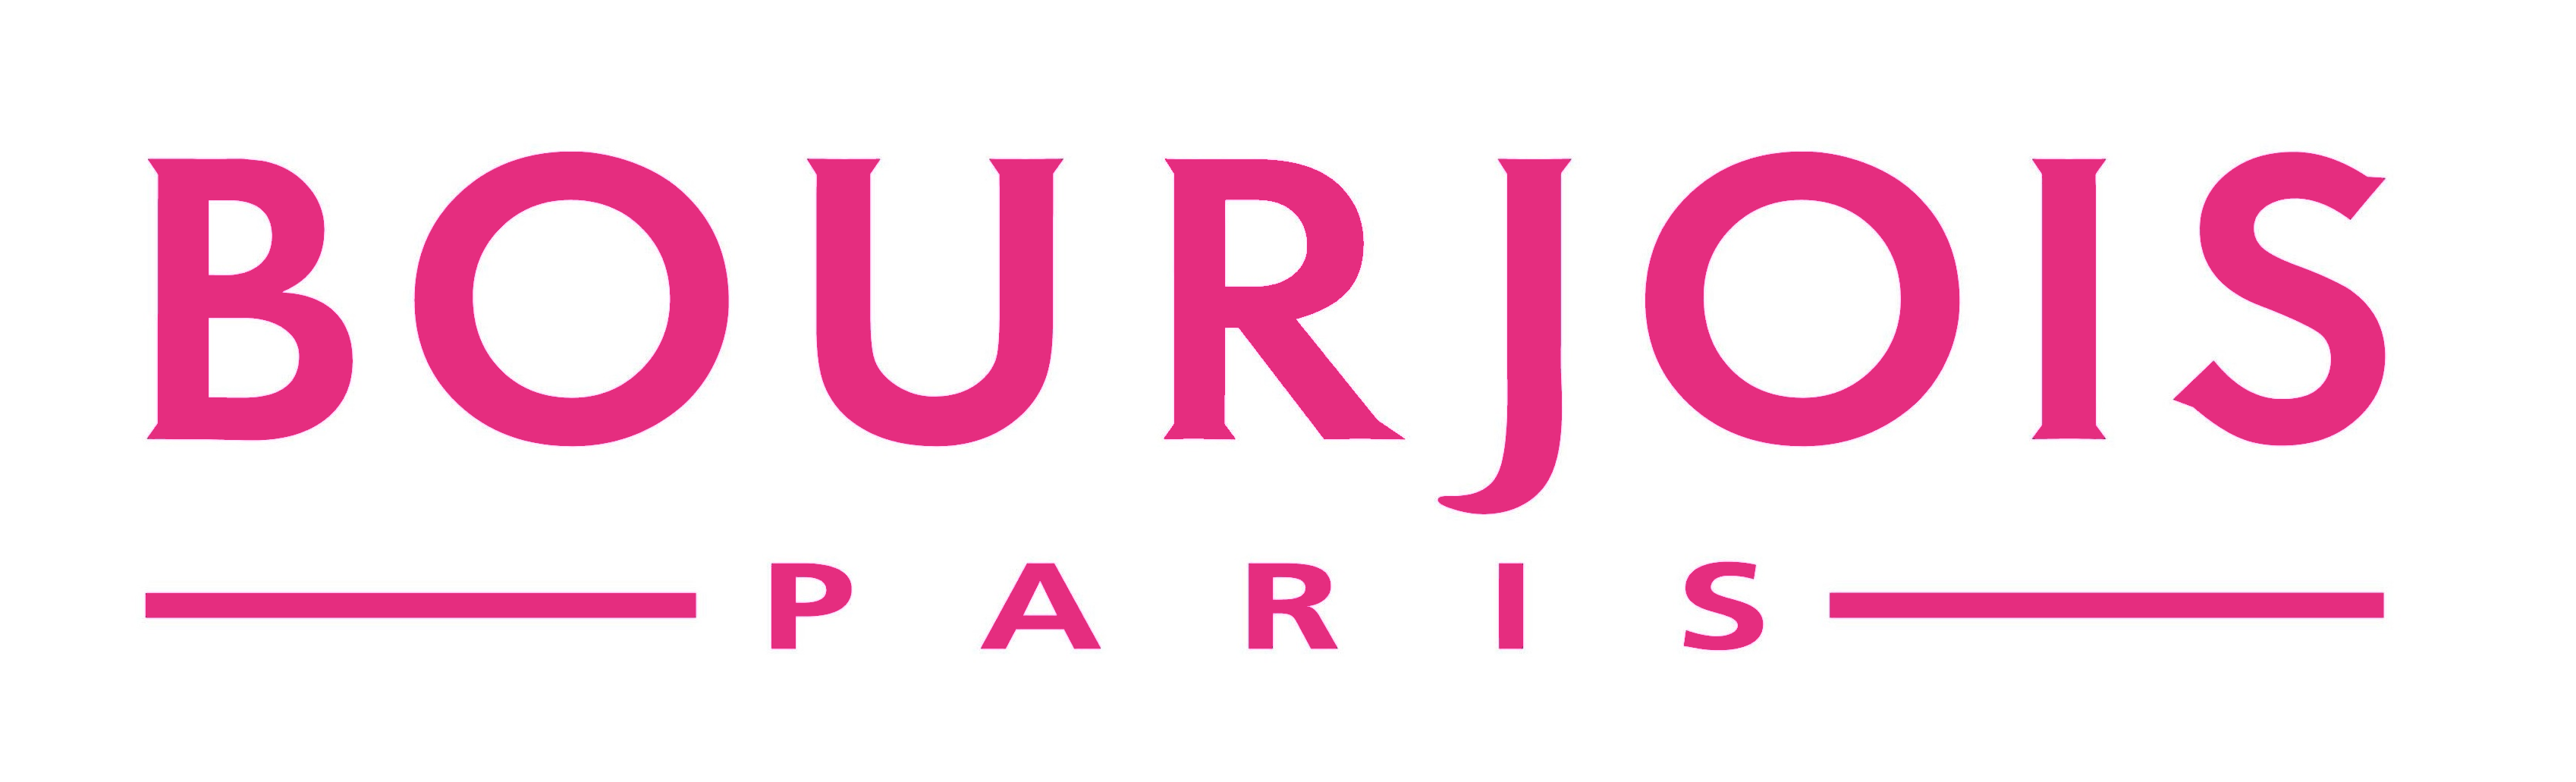 Bourjois_logo_Paris